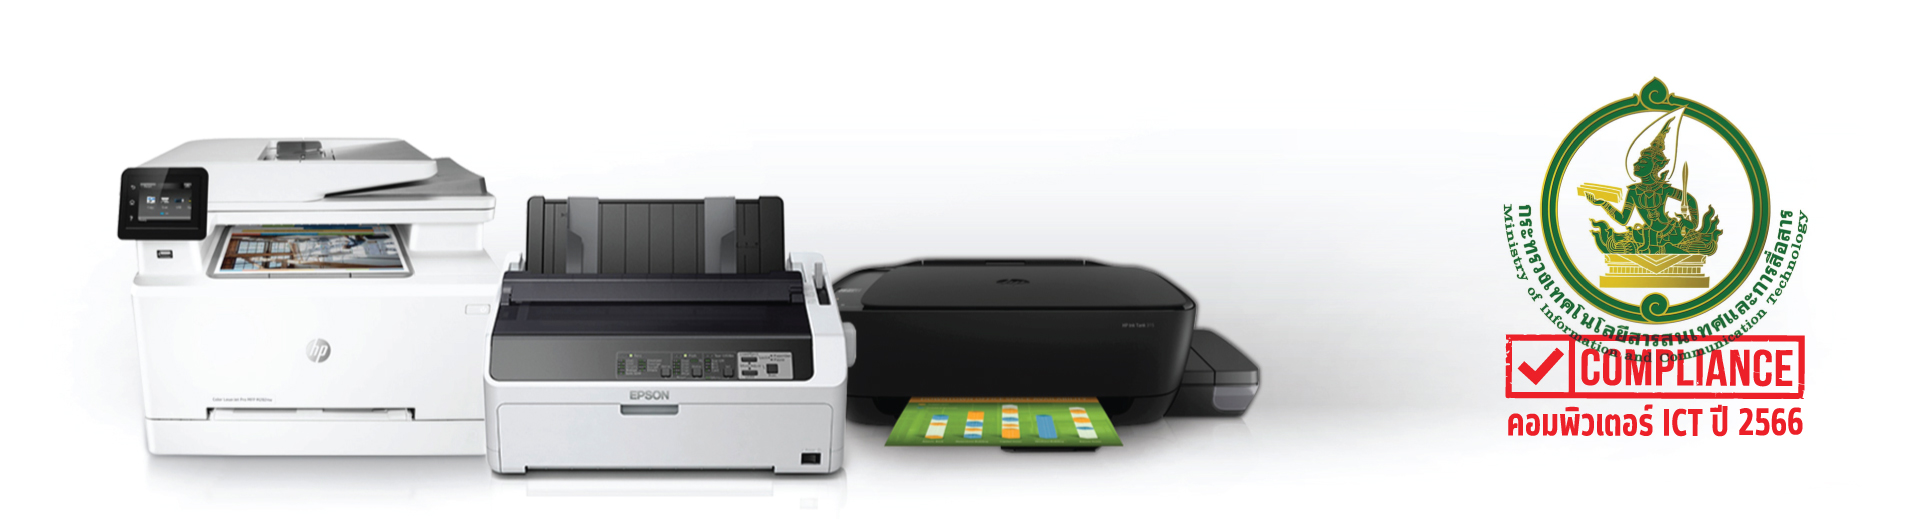 ข้อ 44. เครื่องพิมพ์แบบฉีดหมึก (Inkjet Printer) สำหรับกระดาษขนาด A3 ราคา 8,000 บาท